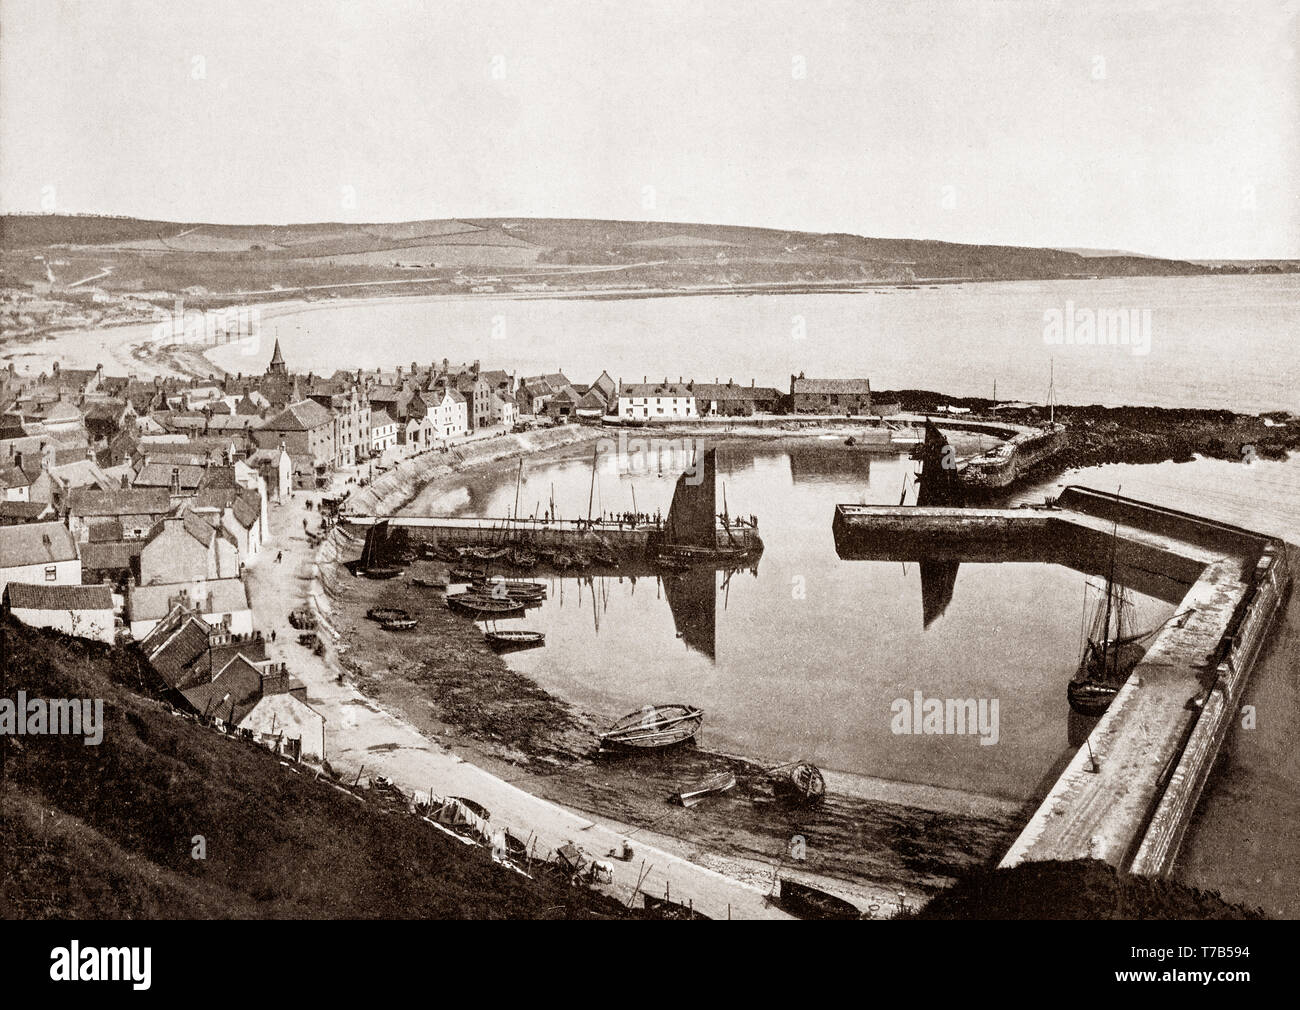 Une vue de la fin du xixe siècle de Stonehaven Harbour dans l'Aberdeenshire, en Écosse. Après la disparition de la ville de Kincardine après les guerres d'indépendance, le Parlement écossais a fait la ville du comté de Stonehaven Kincardineshire. À proximité d'une baie profondément échancrée, la ville a grandi à partir d'un village de pêcheurs de l'âge de fer, le port, composé de deux bassins, a été amélioré dans les années 1820 par l'ingénieur Robert Stevenson (grand-père de l'auteur Robert Louis Stevenson) et devient un centre important du 19e siècle, le commerce du hareng. Au 20e siècle il a augmenté rapidement après le boom pétrolier à Aberdeen. Banque D'Images